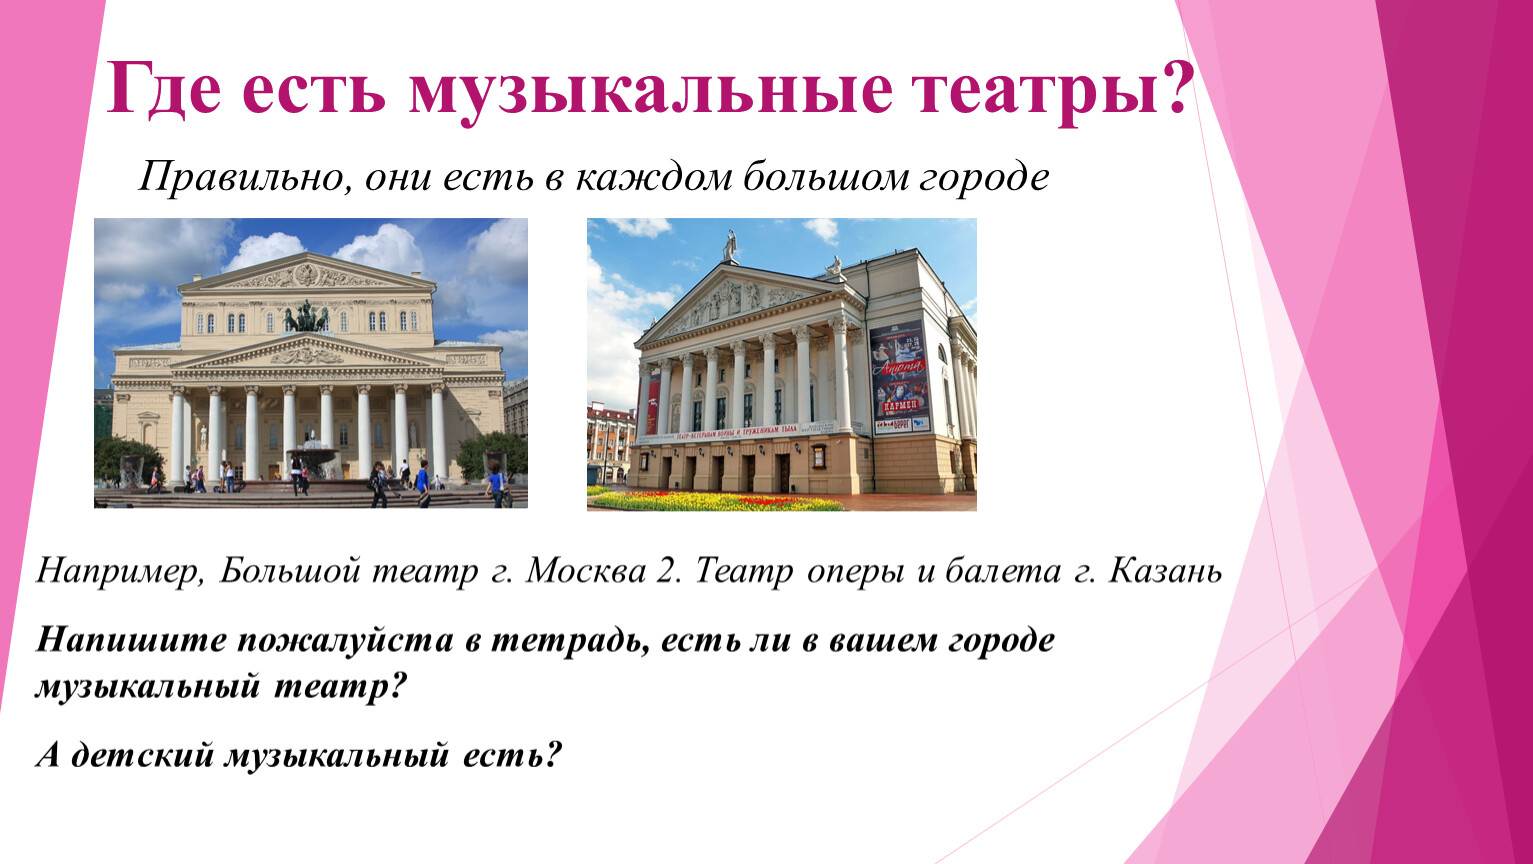 Театр это 2 класс. Театр оперы и балета Кемерово. Театр оперы 2 класс. Московский музыкальный театр. Что такое музыкальный театр 2 класс.